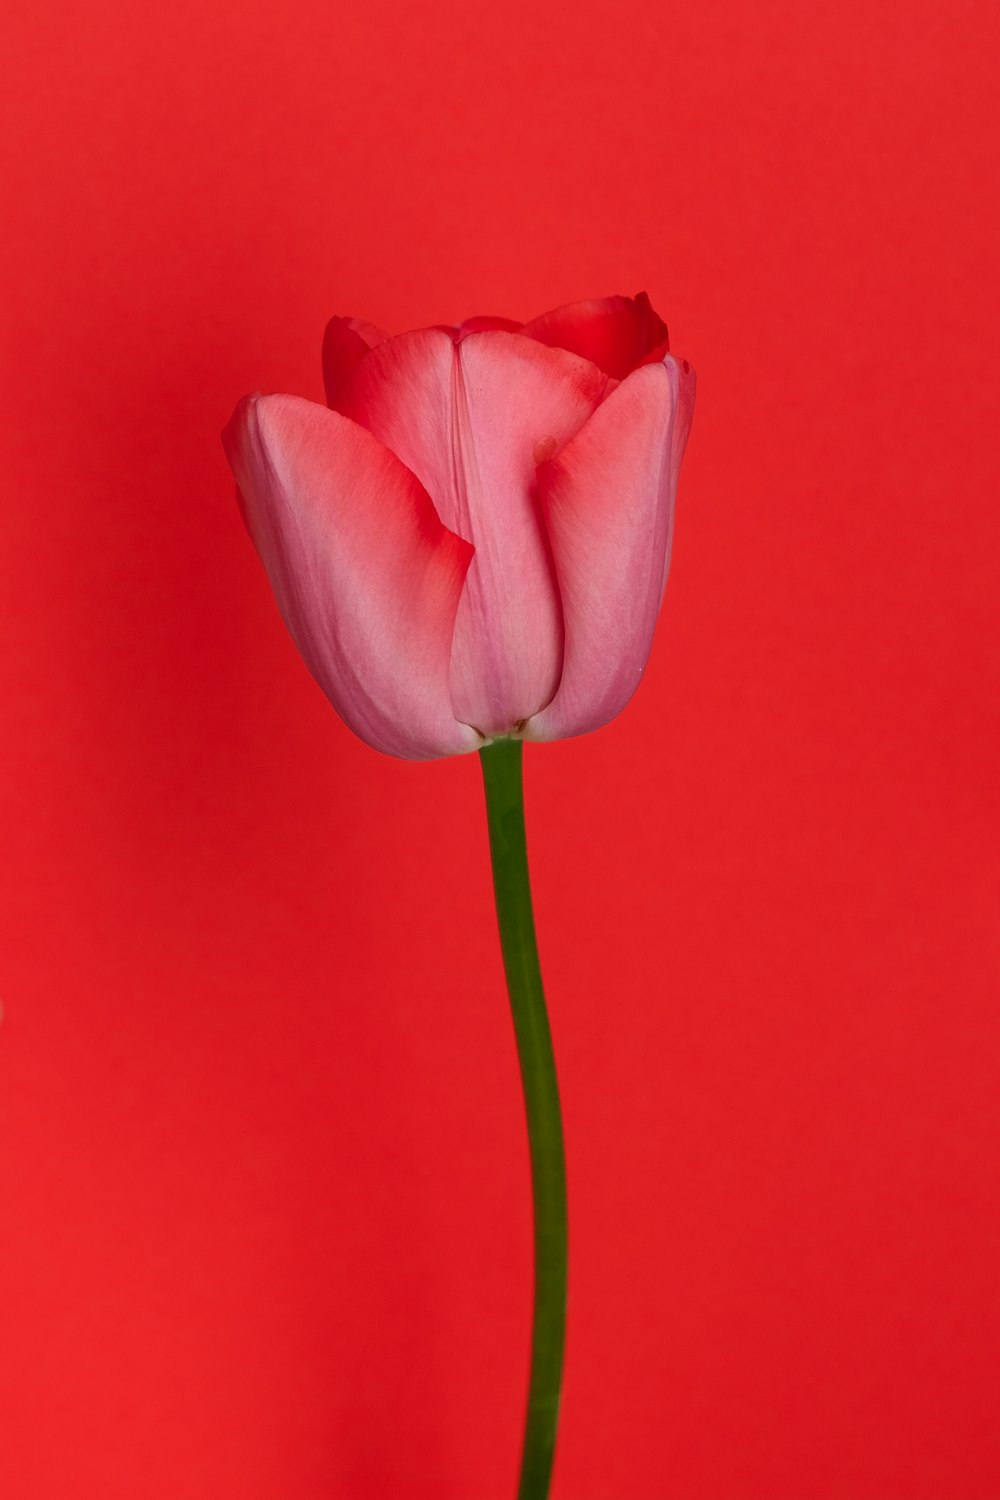 Tulipán rosa en fotografía de primer plano